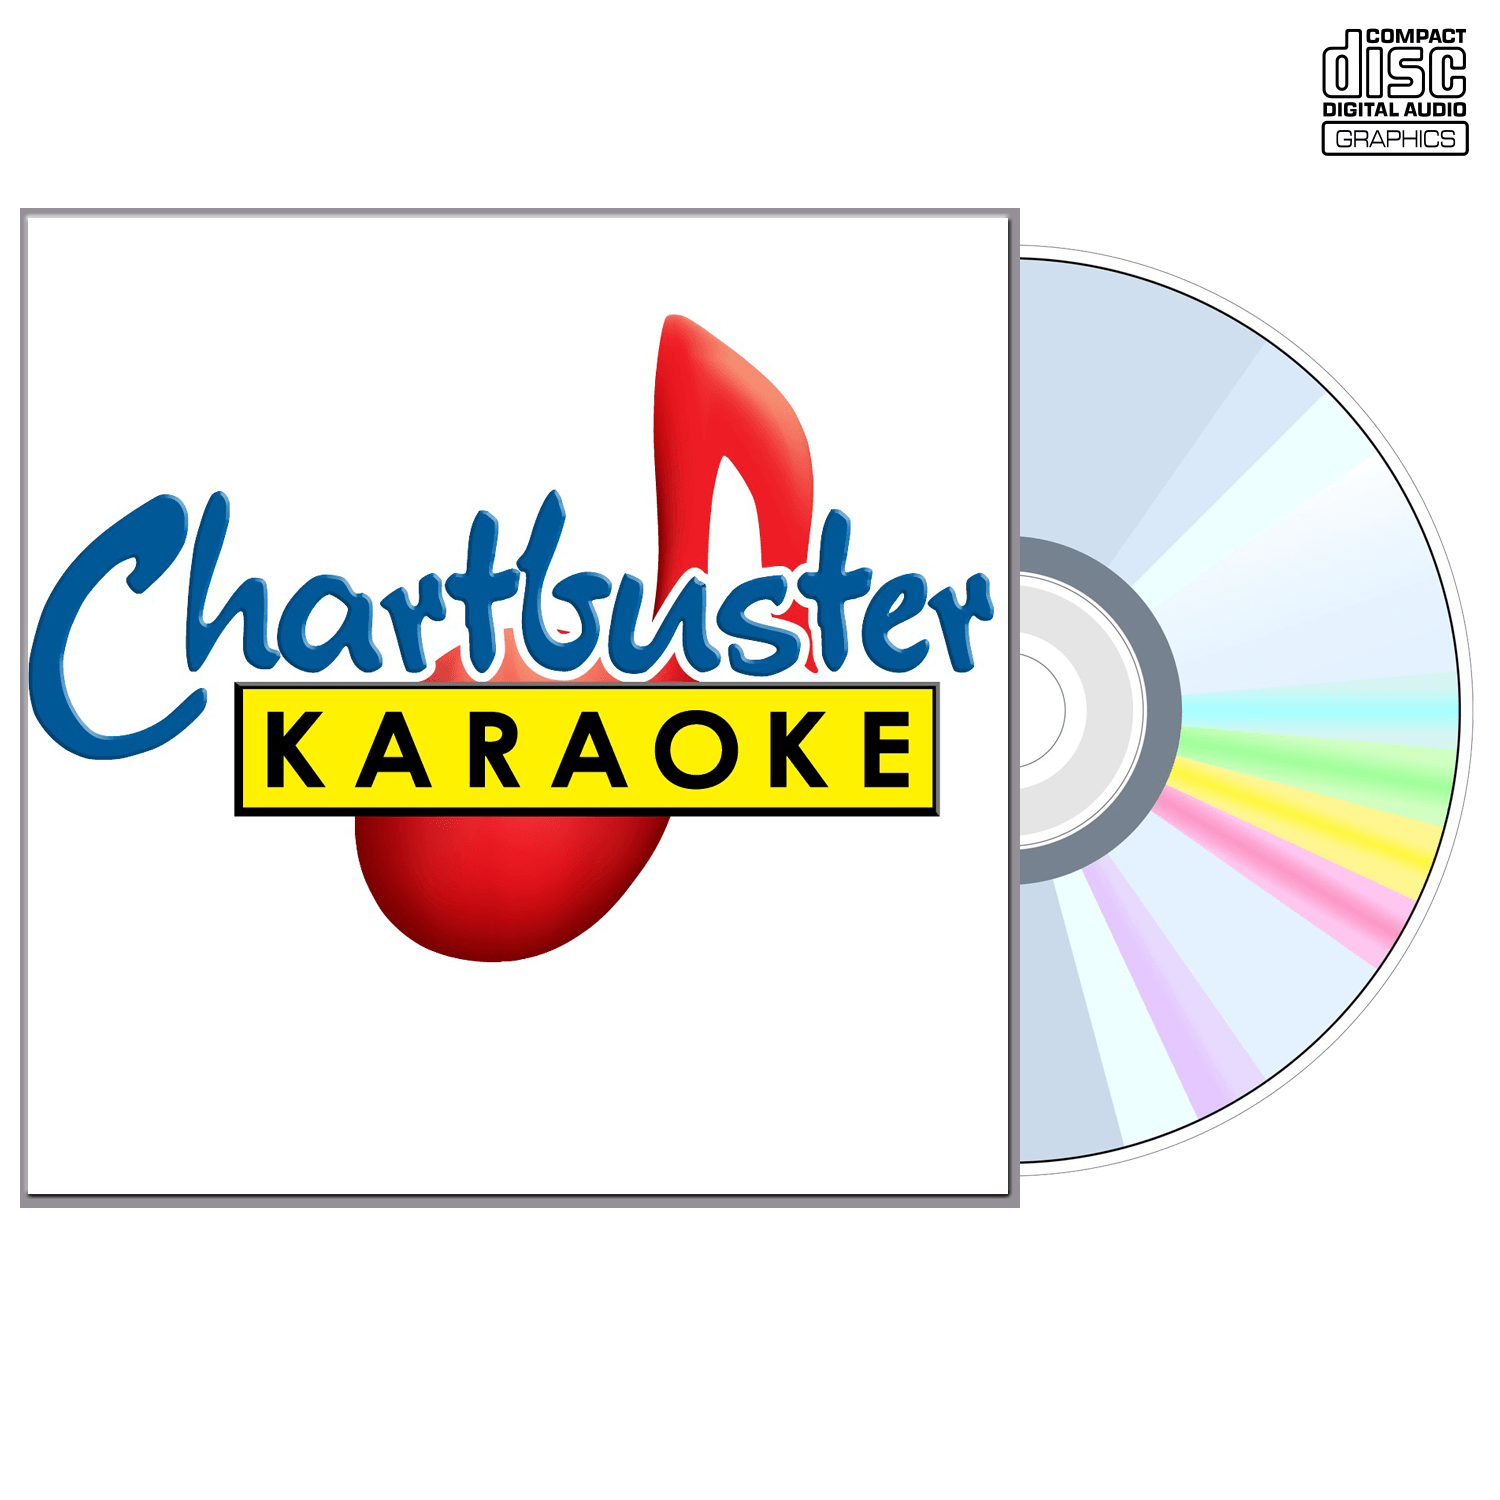 Steve Azar - CD+G - Chartbuster Karaoke - Karaoke Home Entertainment